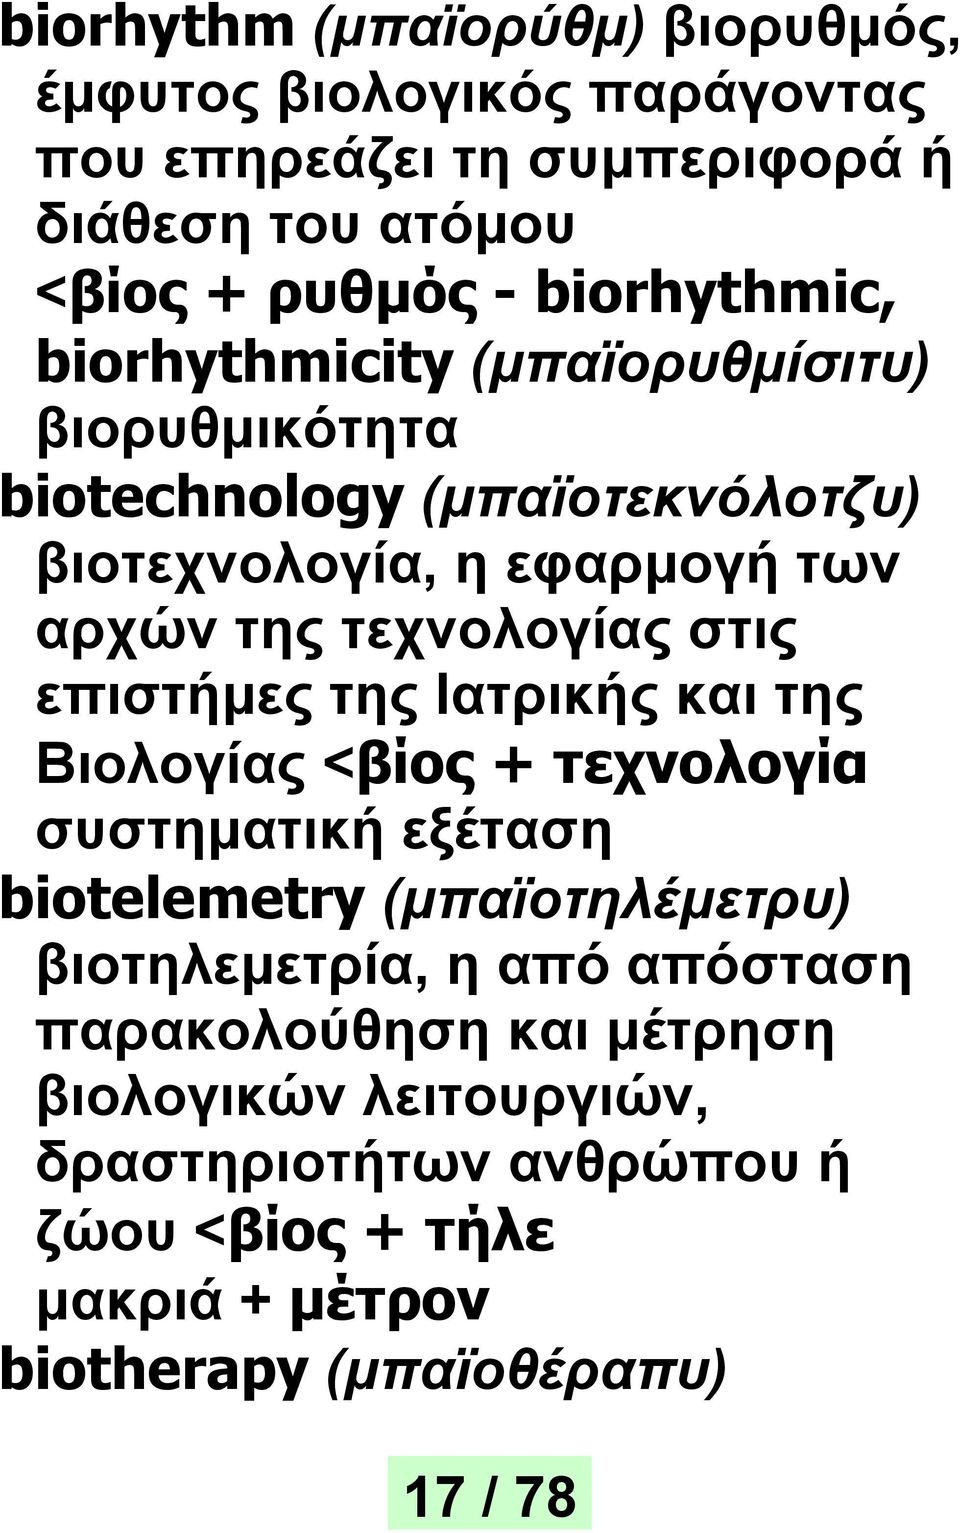 τεχνολογίας στις επιστήμες της Ιατρικής και της Βιολογίας <βίος + τεχνολογία συστηματική εξέταση biotelemetry (μπαϊοτηλέμετρυ)